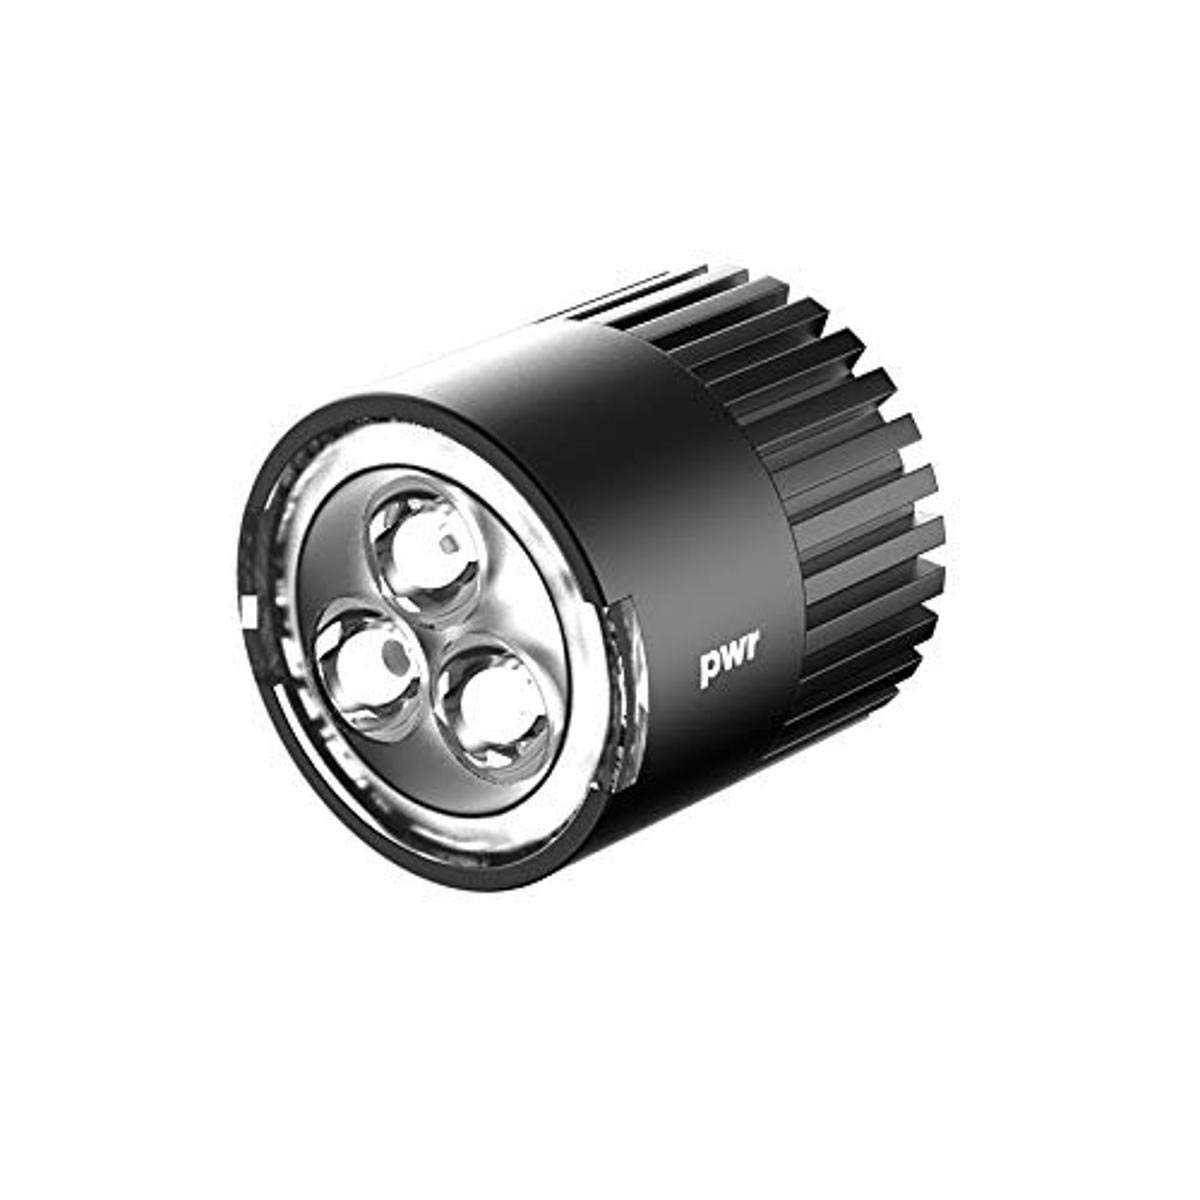 Knog Unisex – Erwachsene Lampe-7104417 Stirnlampe, Schwarz, Einheitsgröße